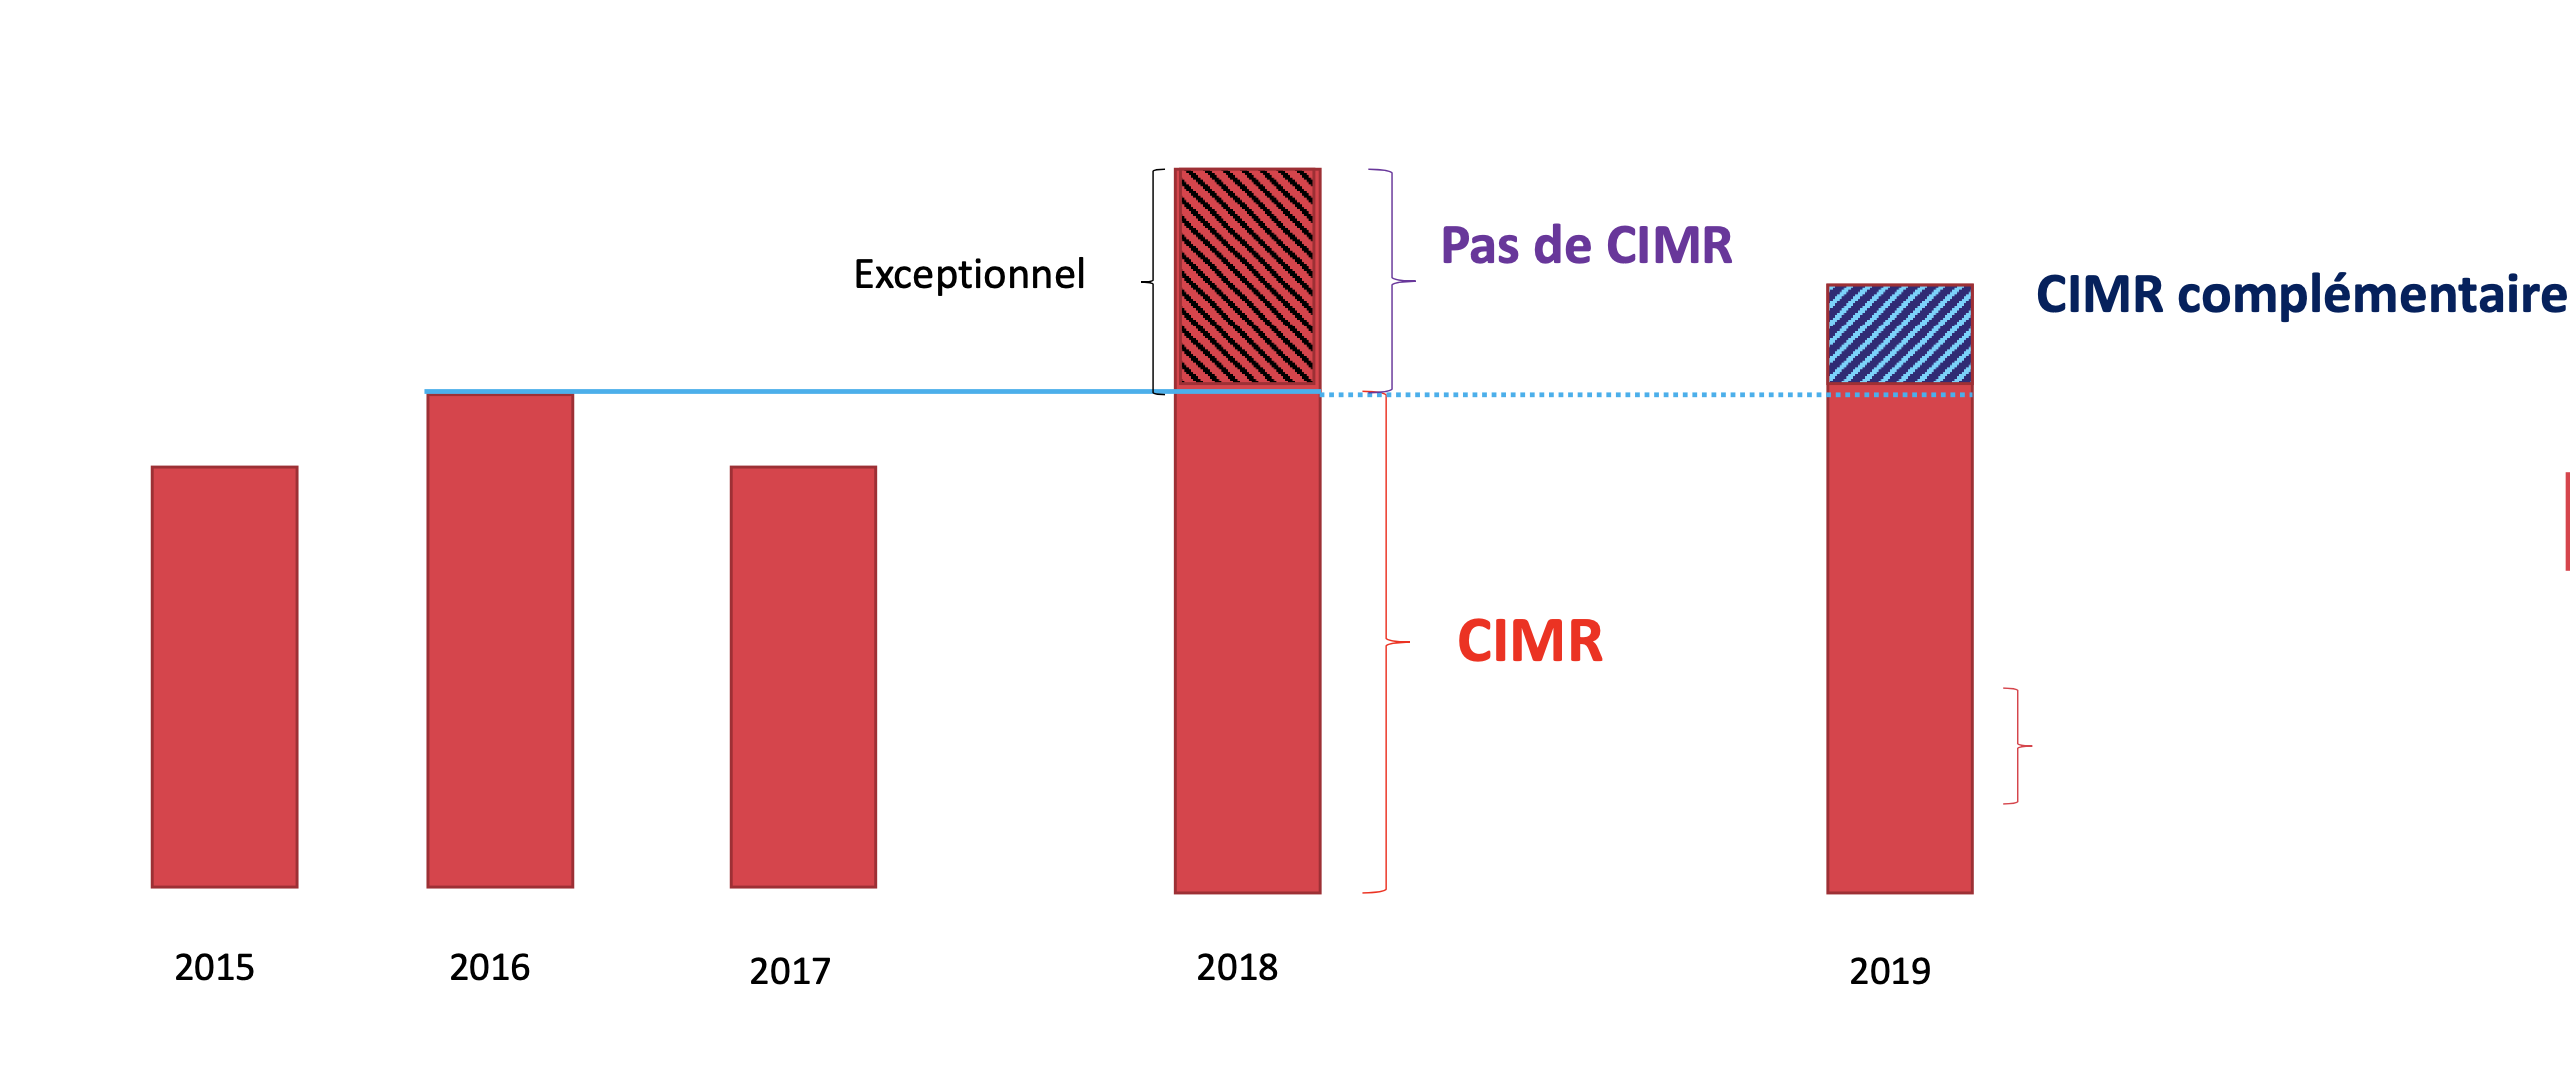 Déclaration de revenus 2020 - CIMR complémentaire 2